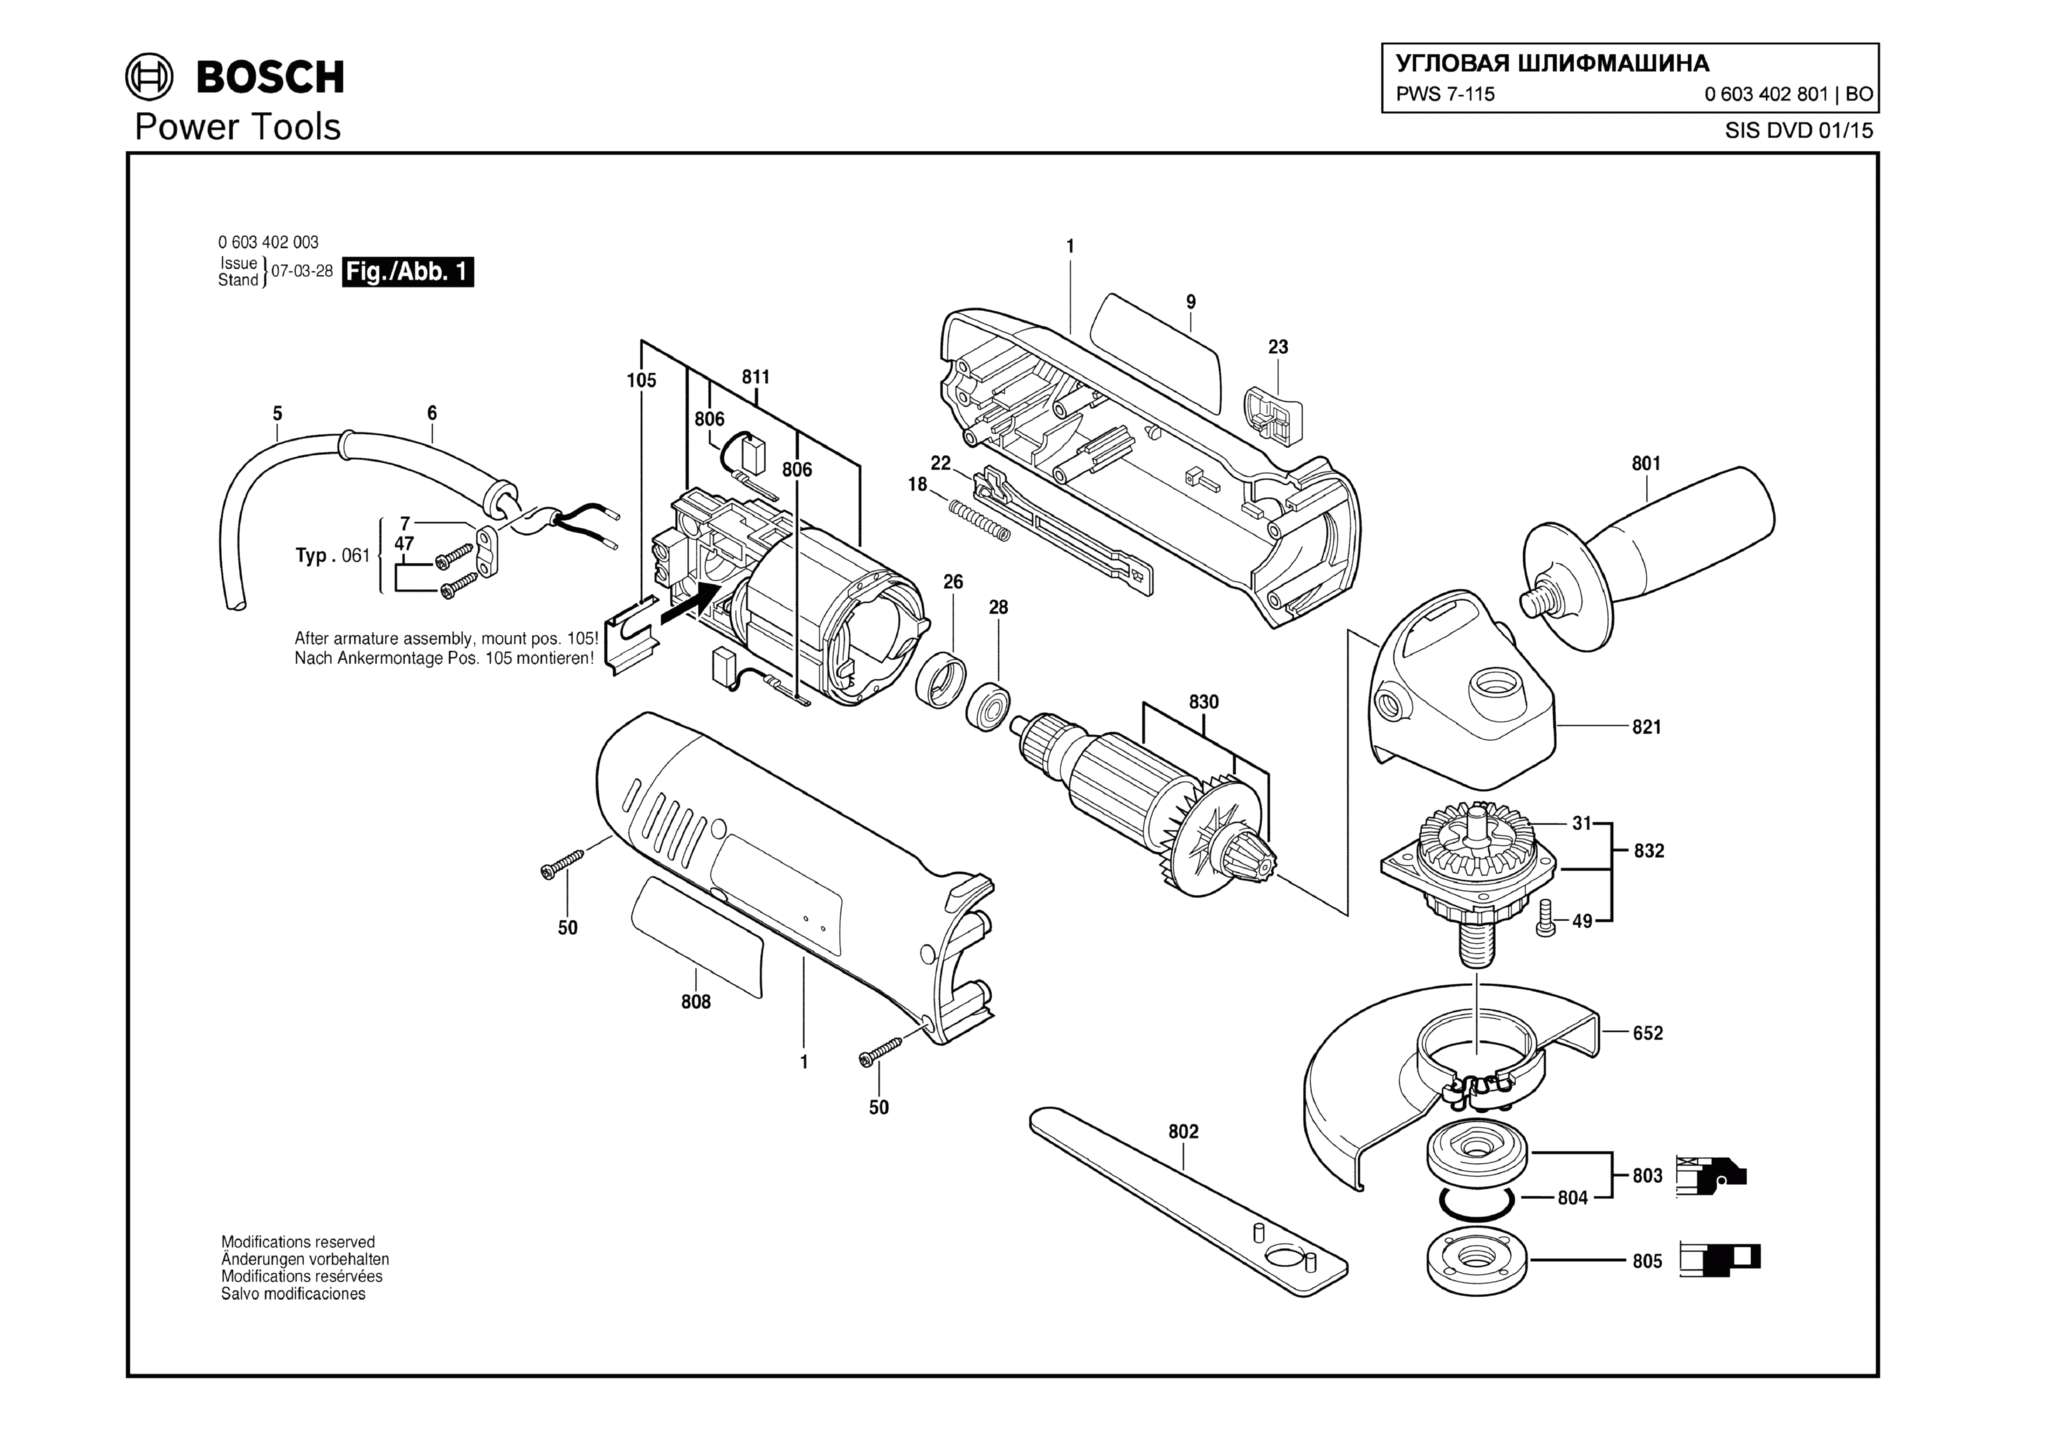 Запчасти, схема и деталировка Bosch PWS 7-115 (ТИП 0603402801)